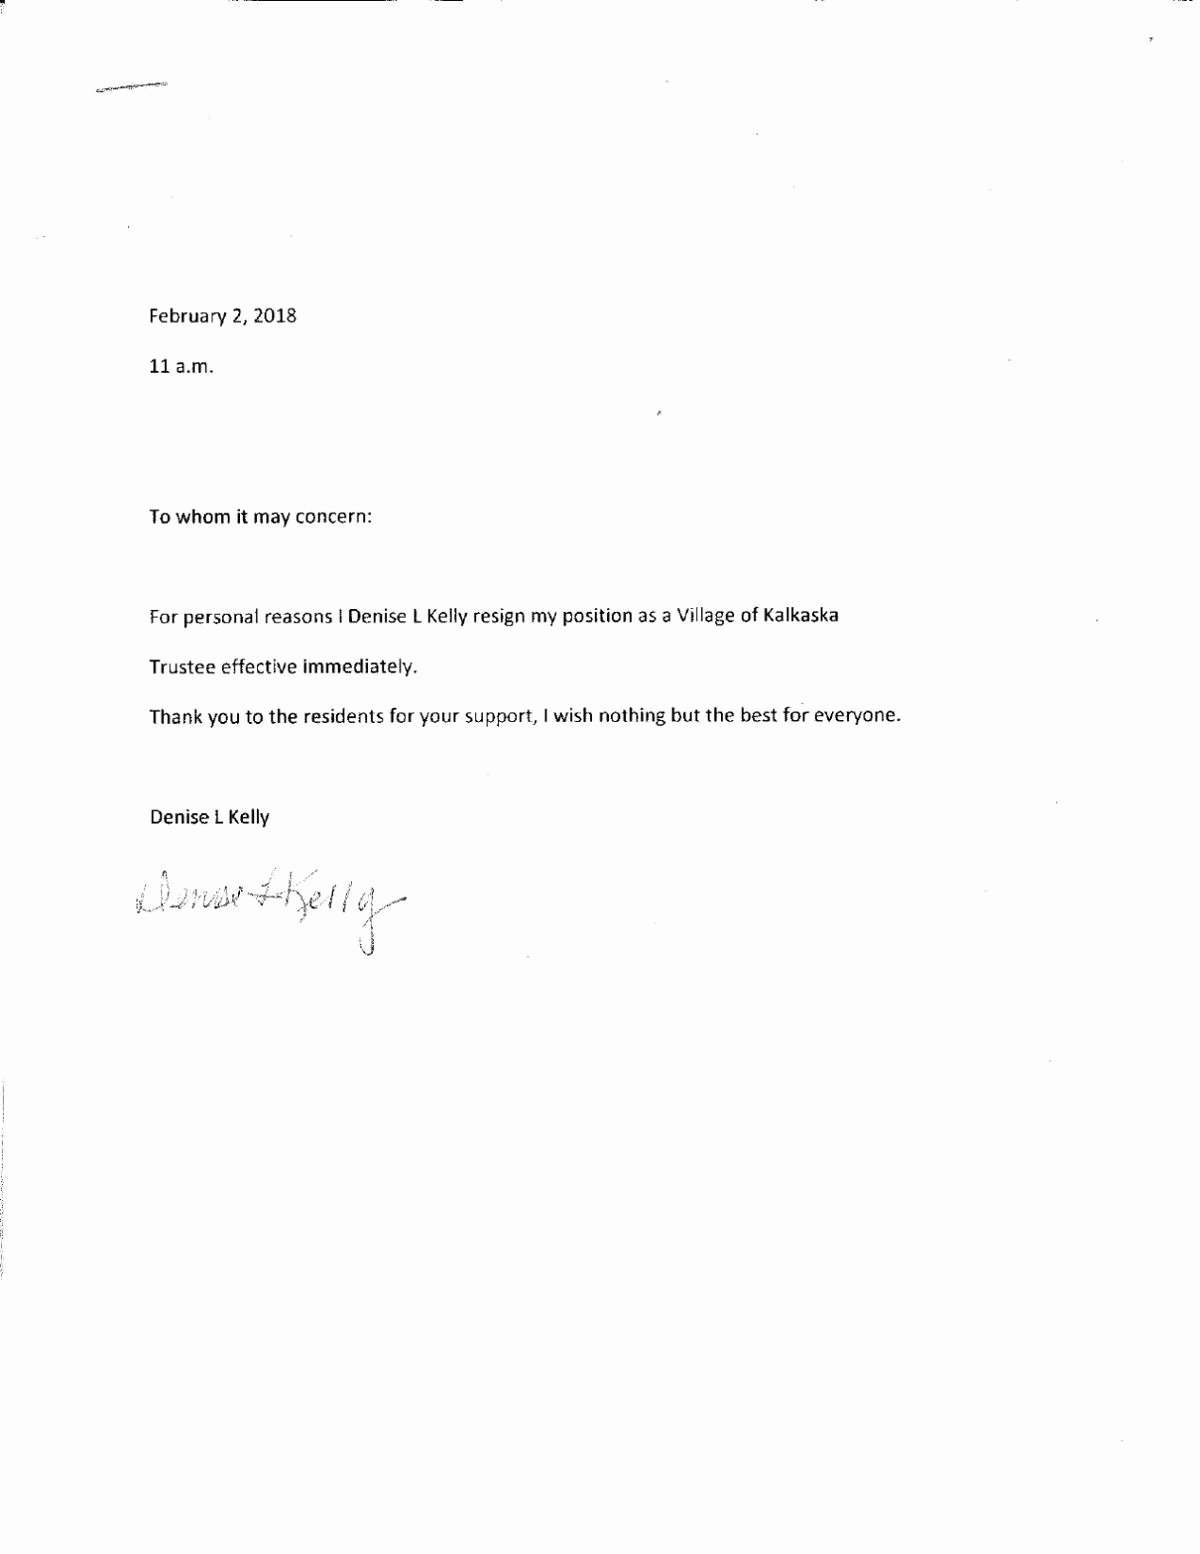 Resignation Letter Effective Immediately Elegant Trustee Kelly Resignation Letter